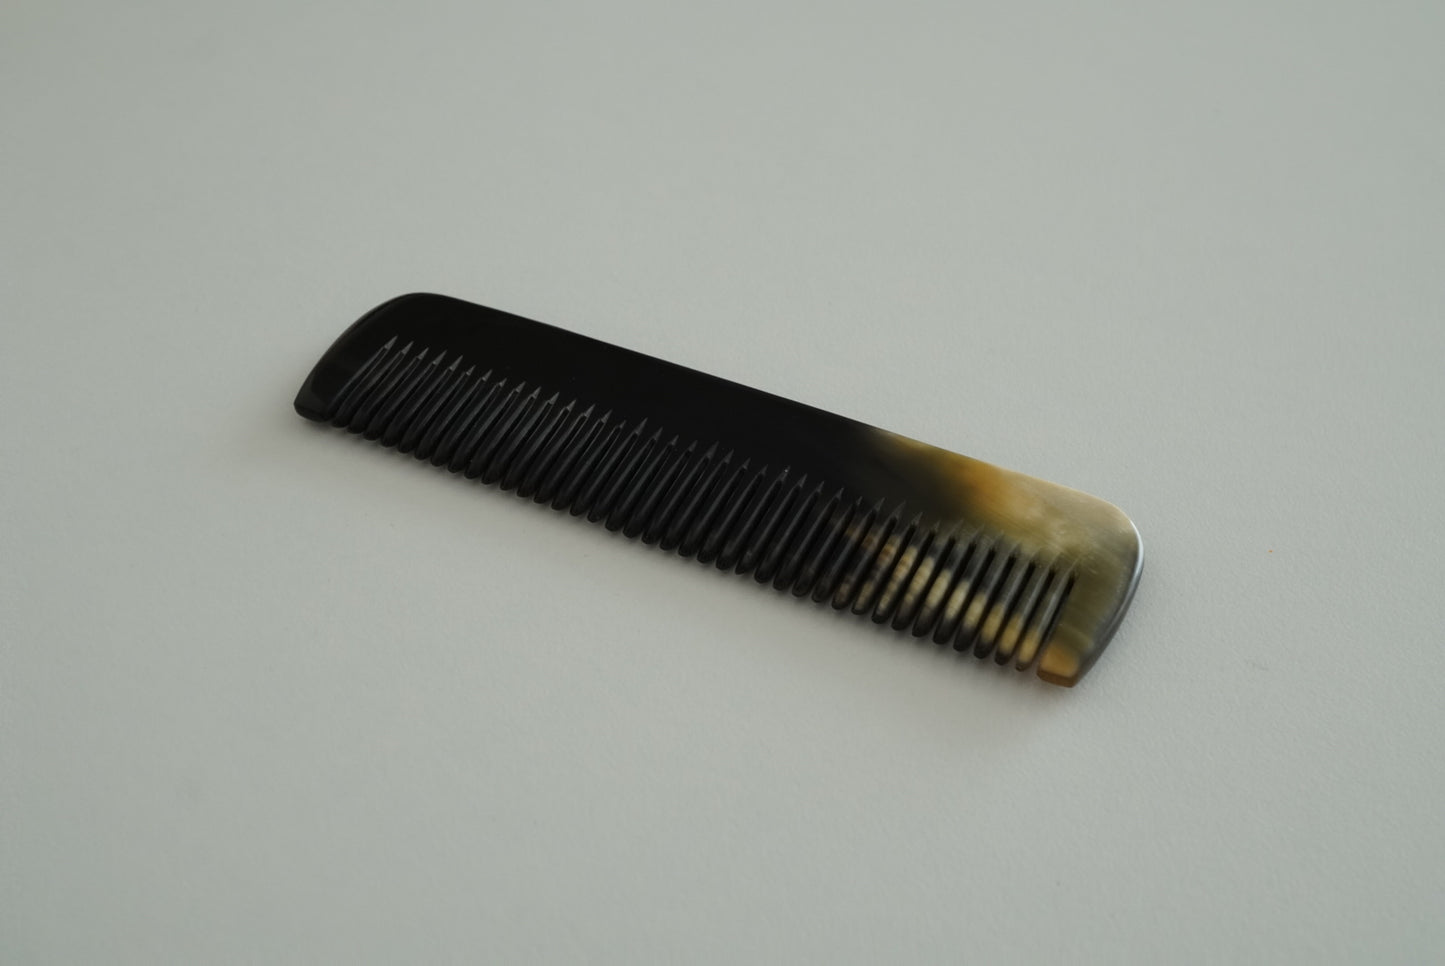 Comb regular small